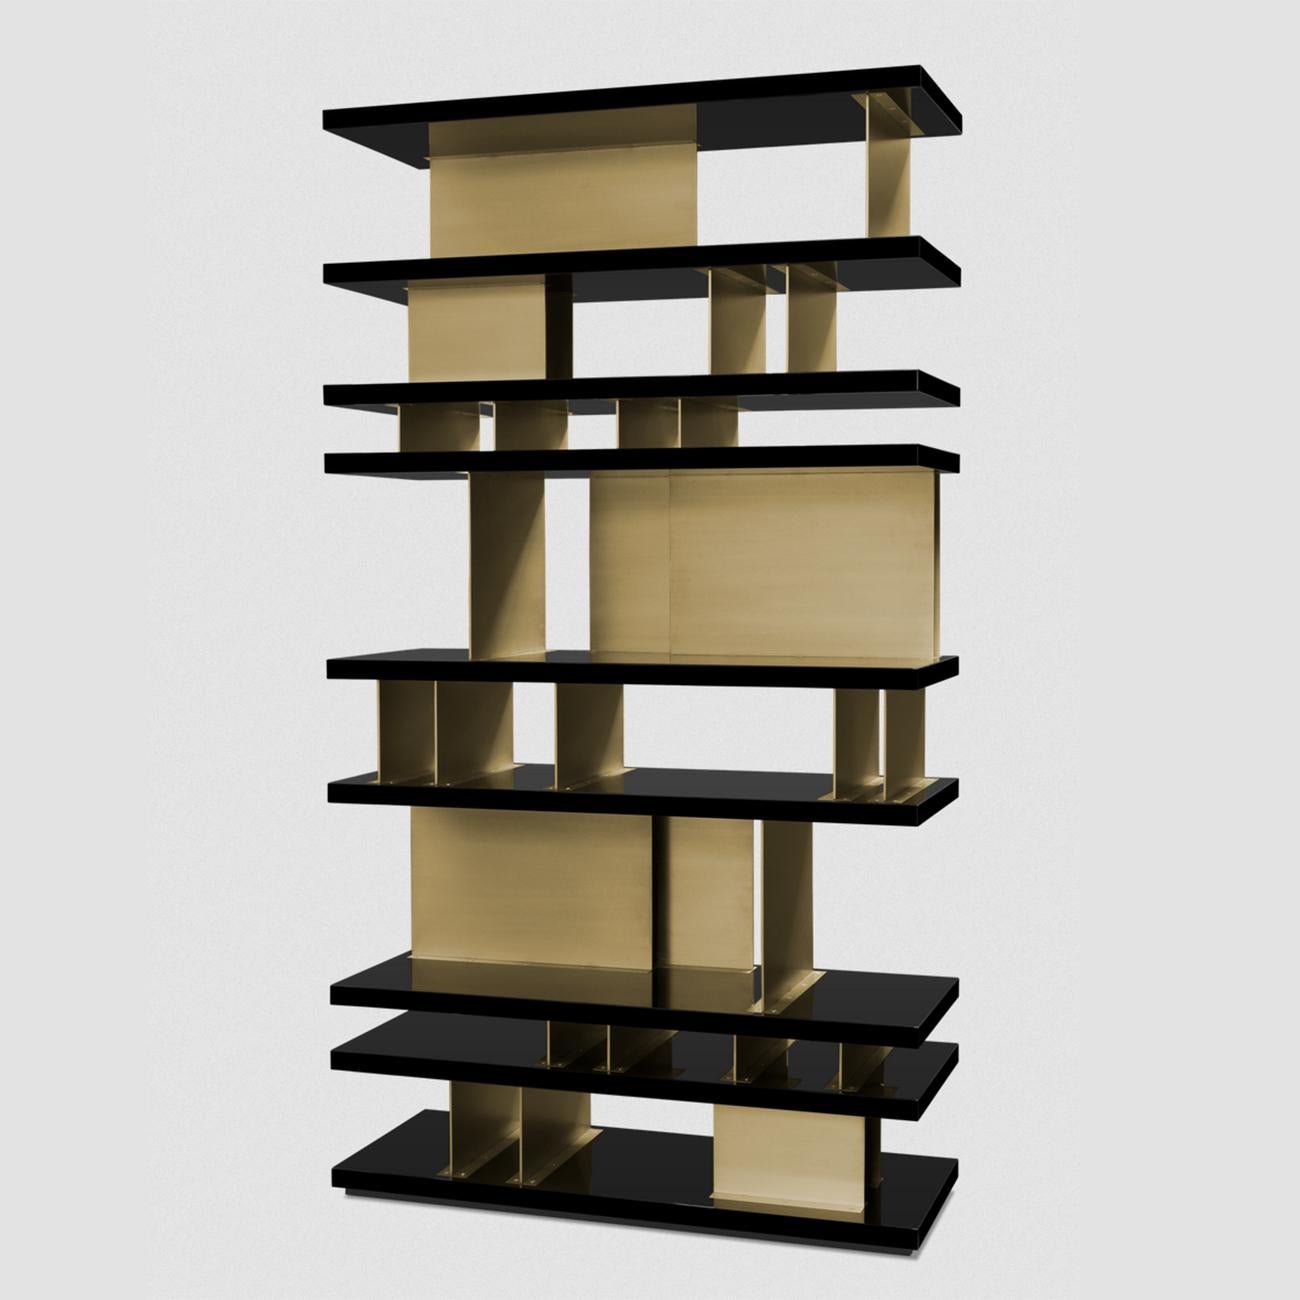 Bibliothèque Platinum avec structure en laque 
en bois en finition noire et en laiton massif en finition brossée.